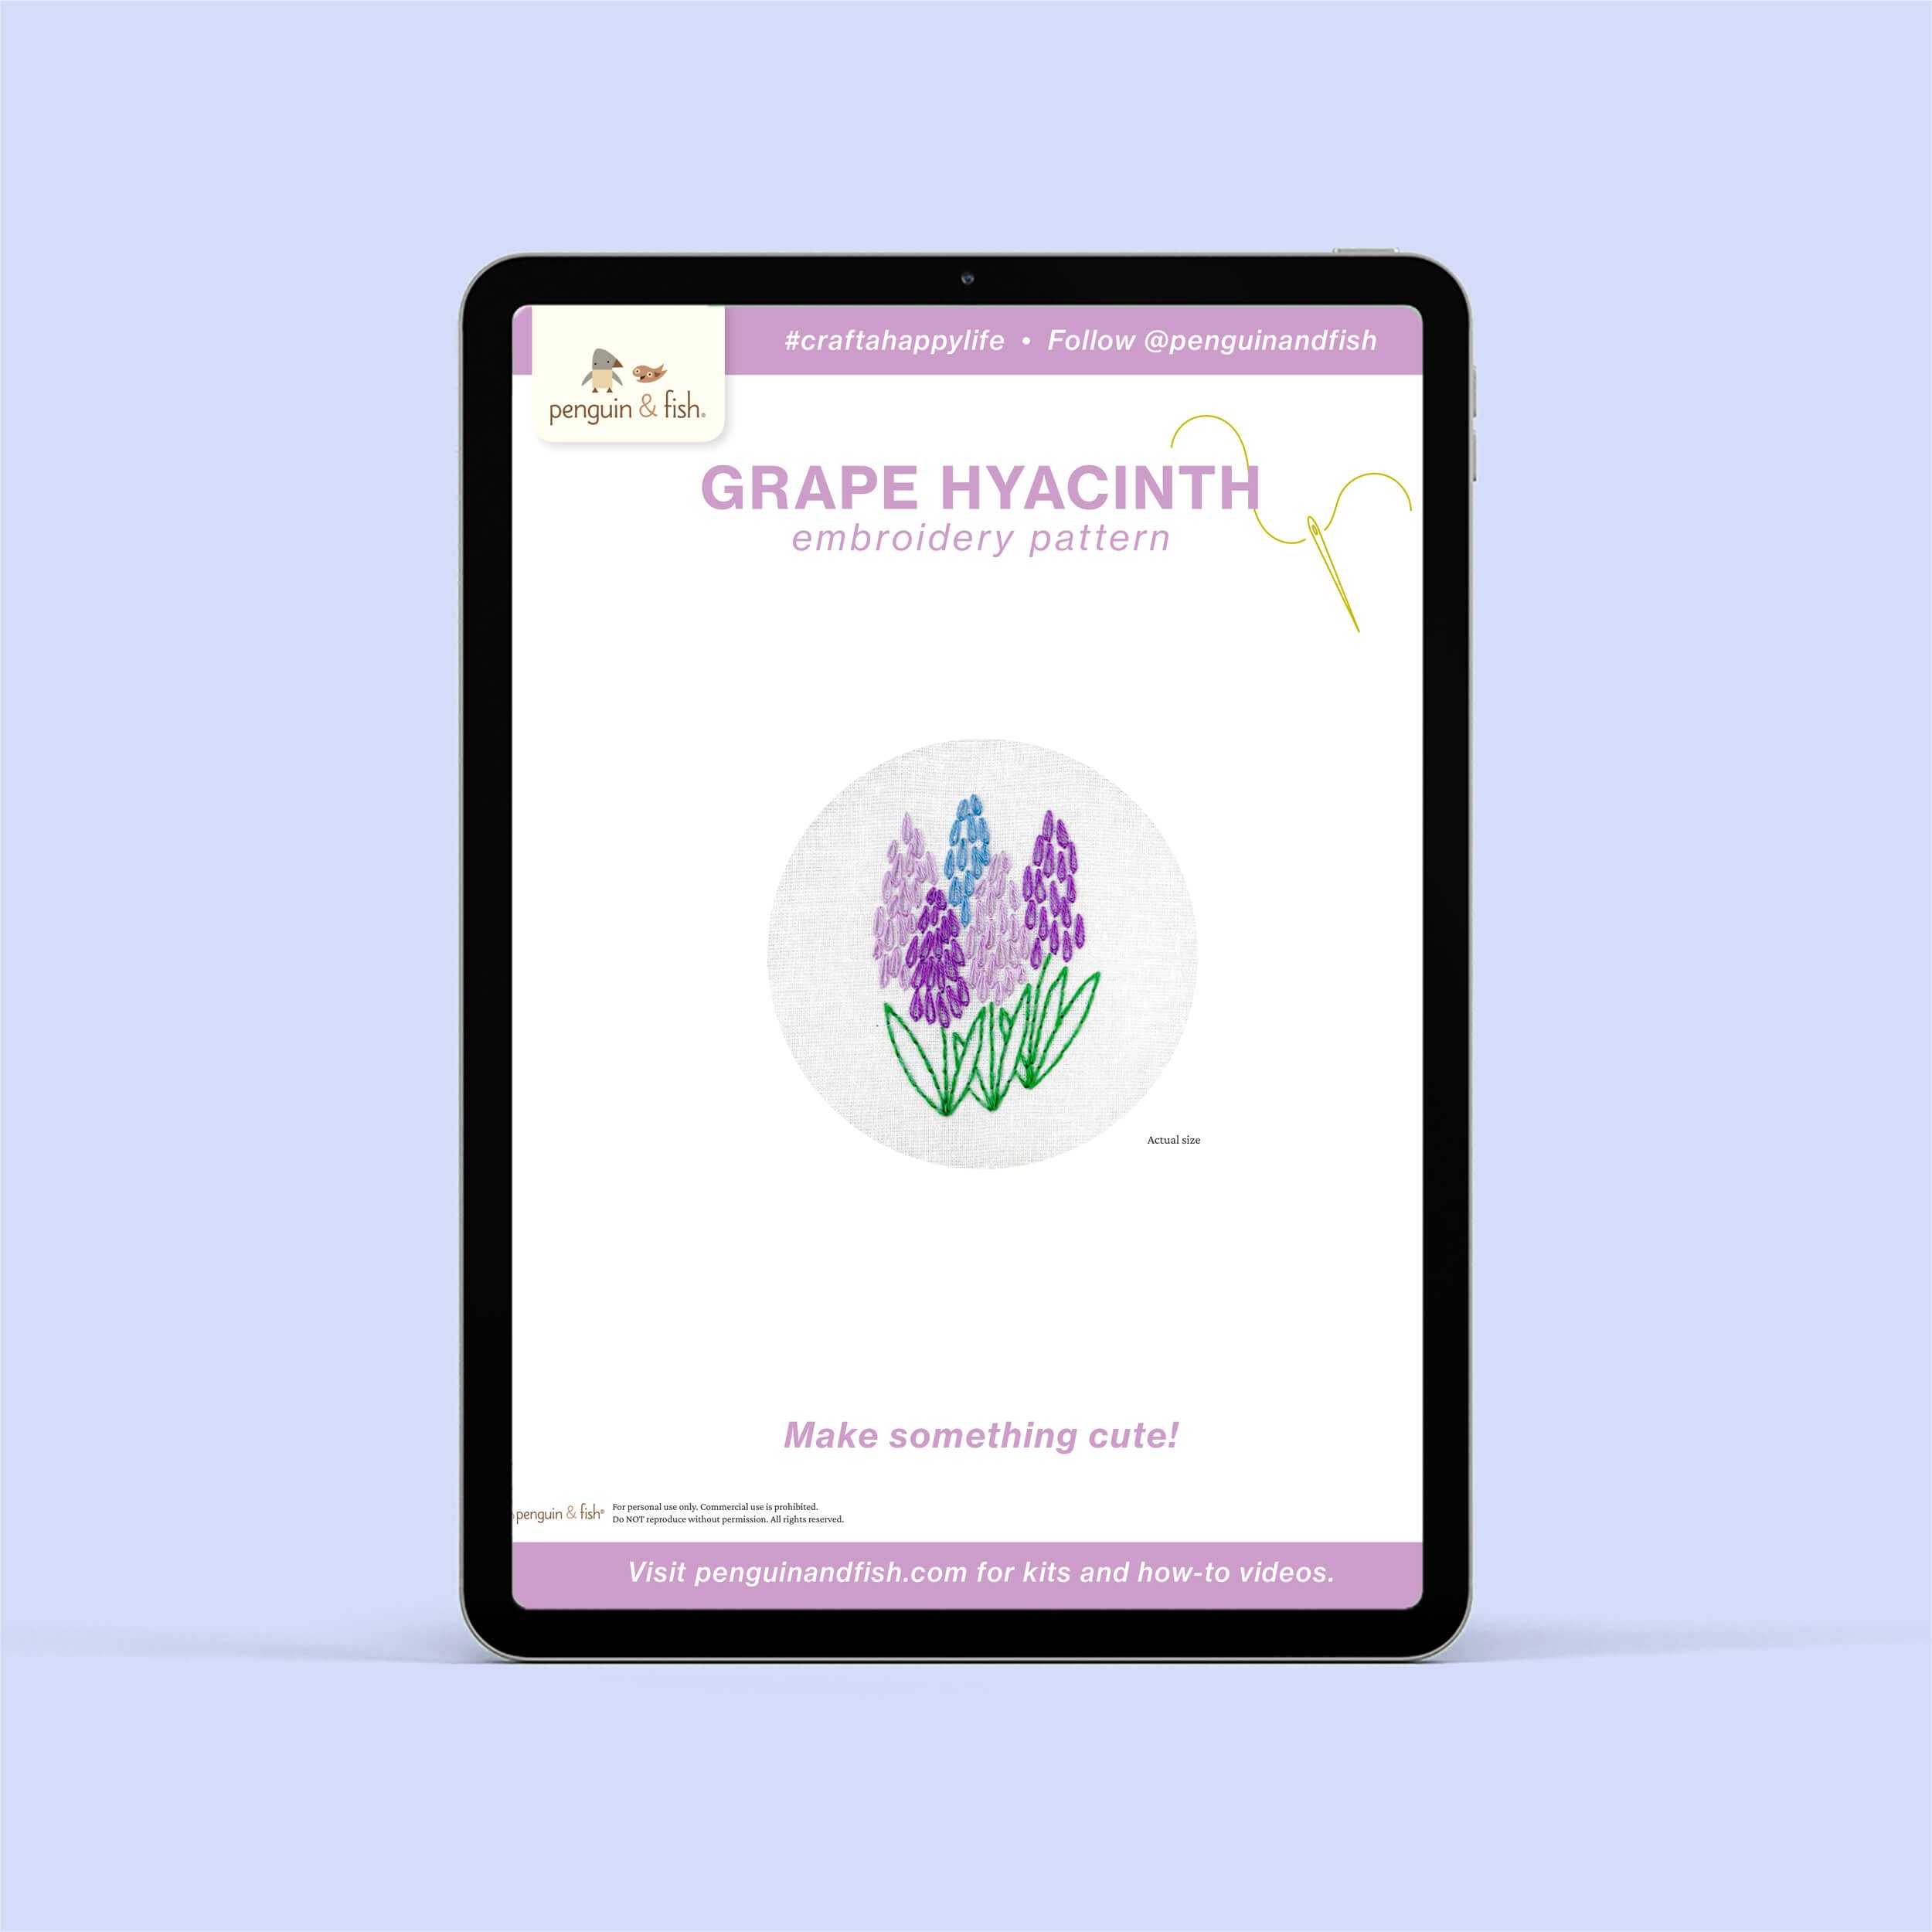 Grape Hyacinth PDF embroidery pattern